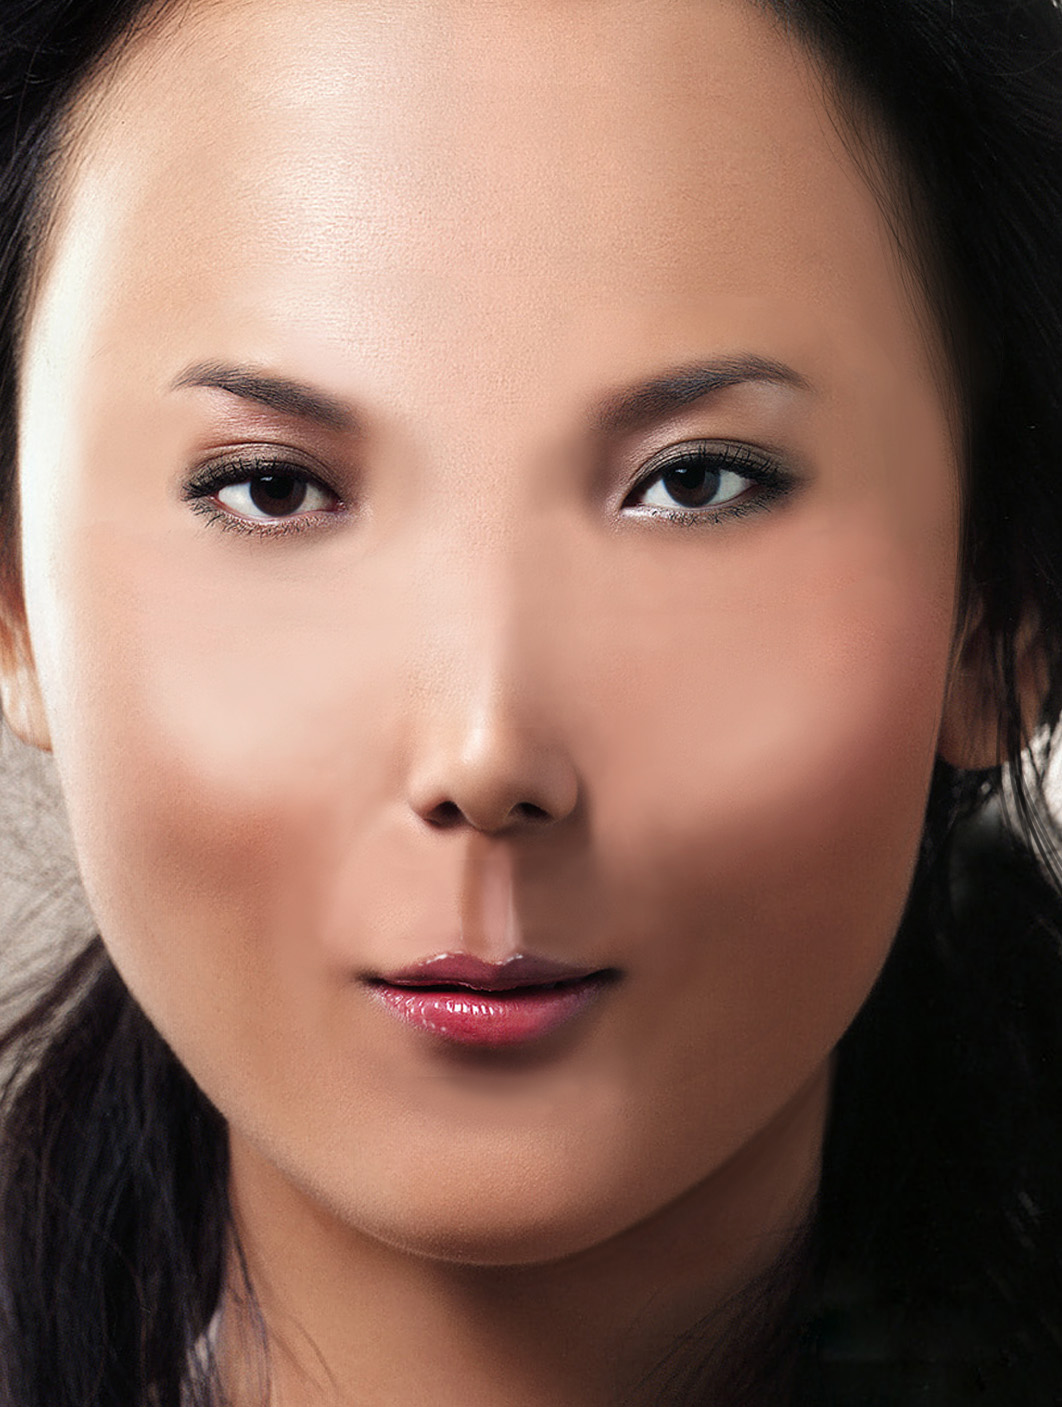 Узкий разрез глаз какая раса. Женское лицо. Монголоидный Тип лица. Люди азиатской внешности. Монголоидная внешность.